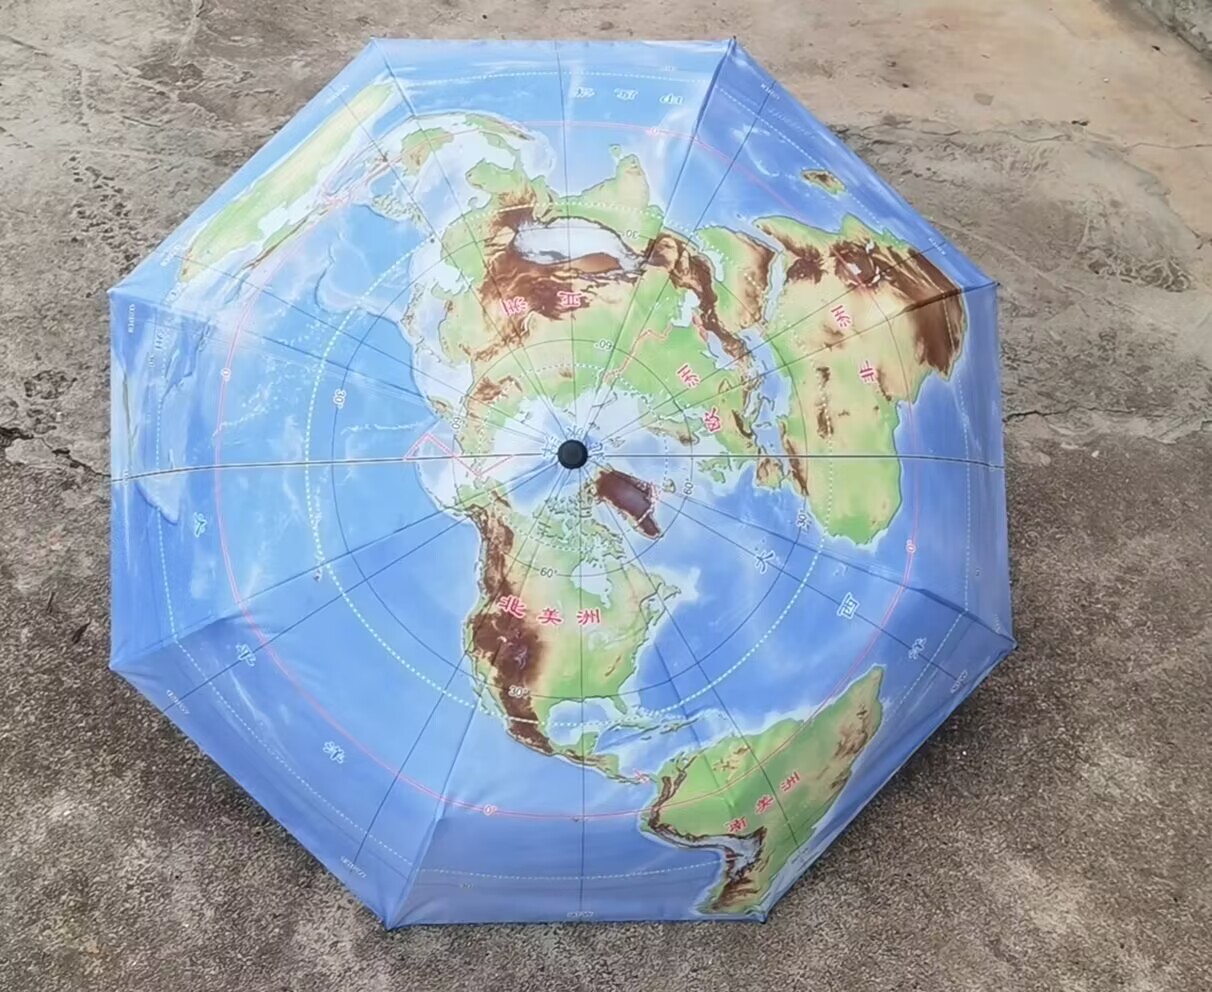 正品地图伞三折叠晴雨伞展示别致北极为中心50°S以北海陆双十